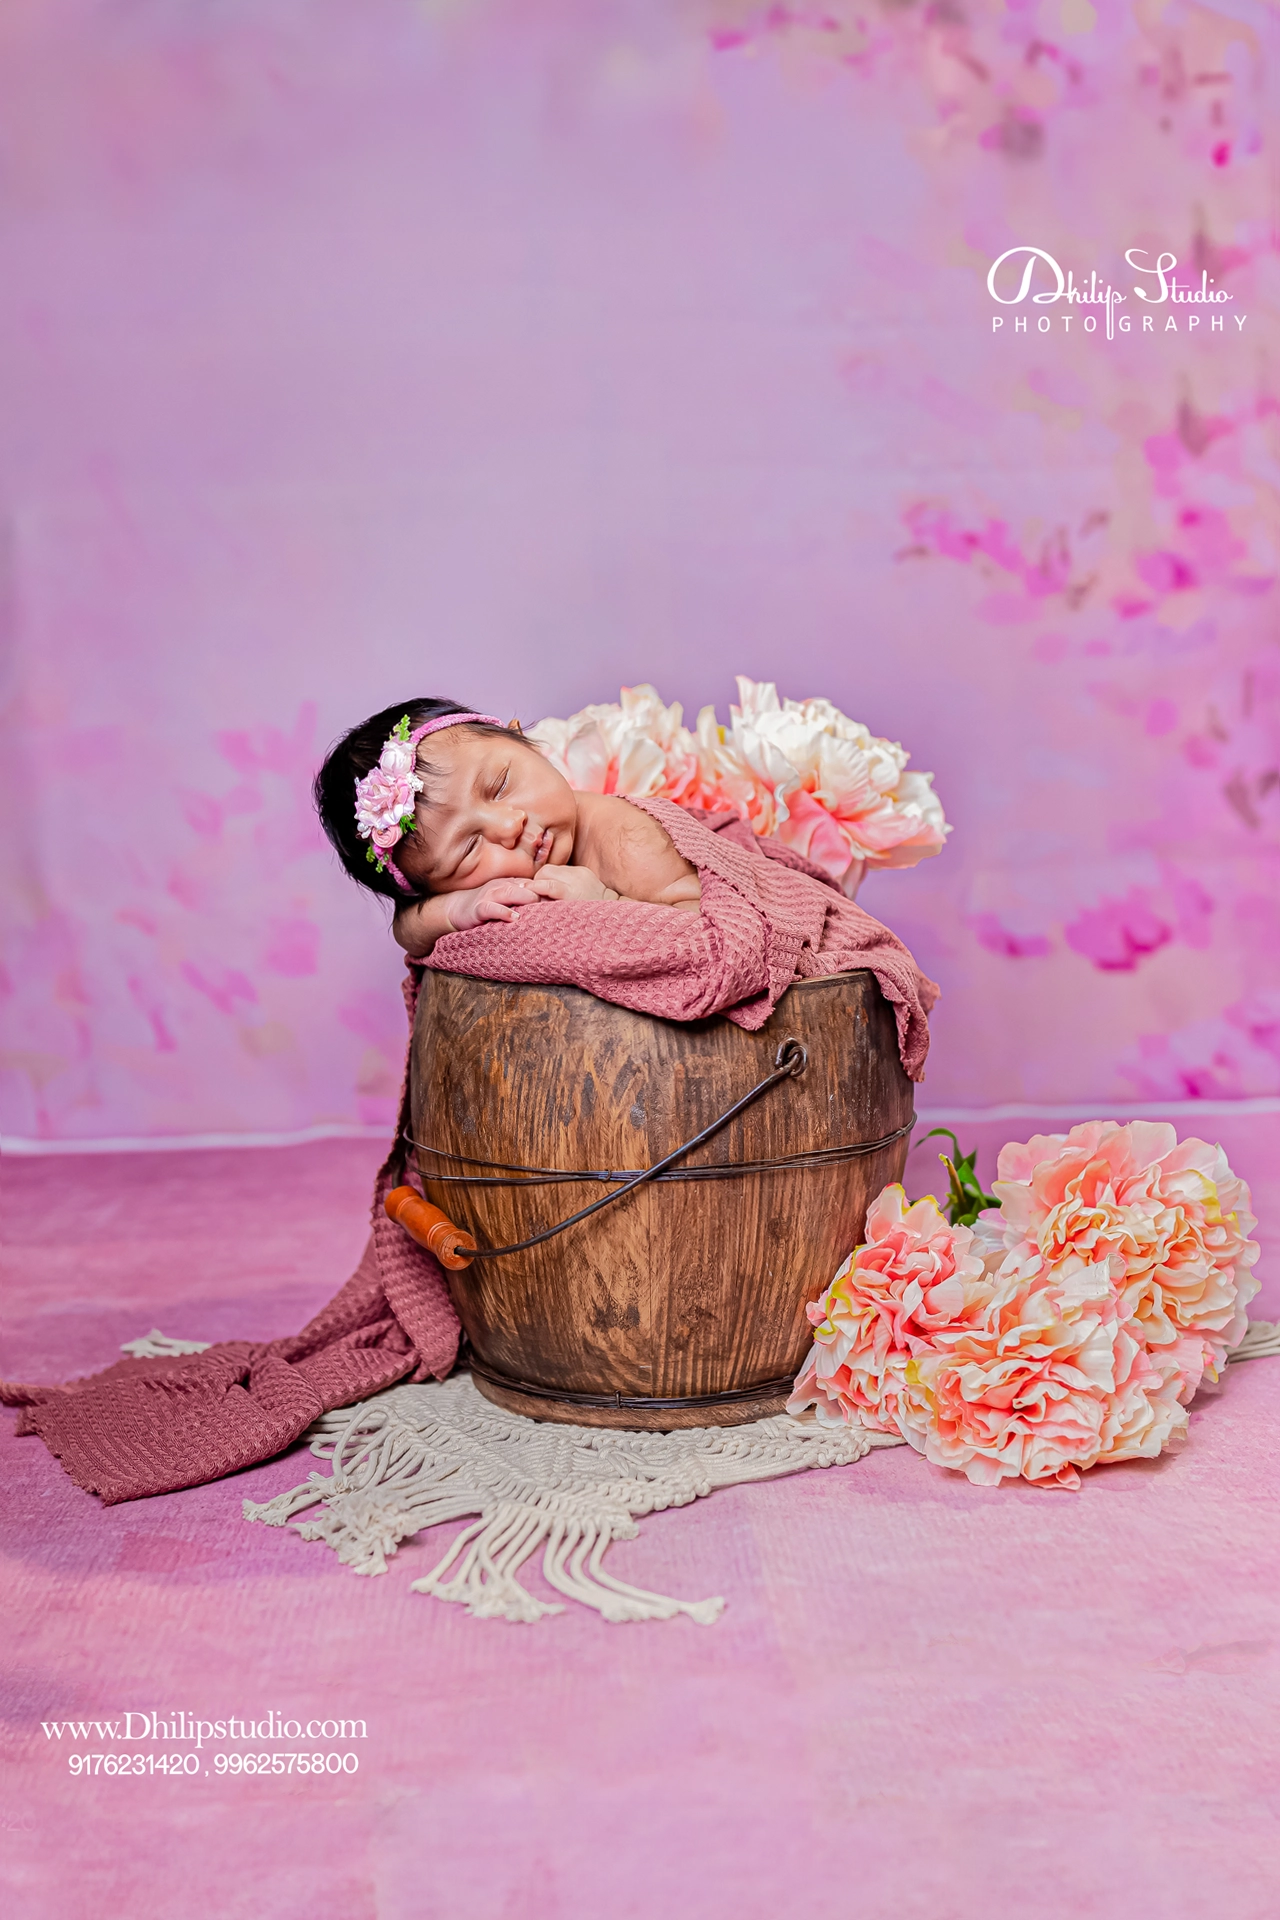 Newborn baby photography in chennai